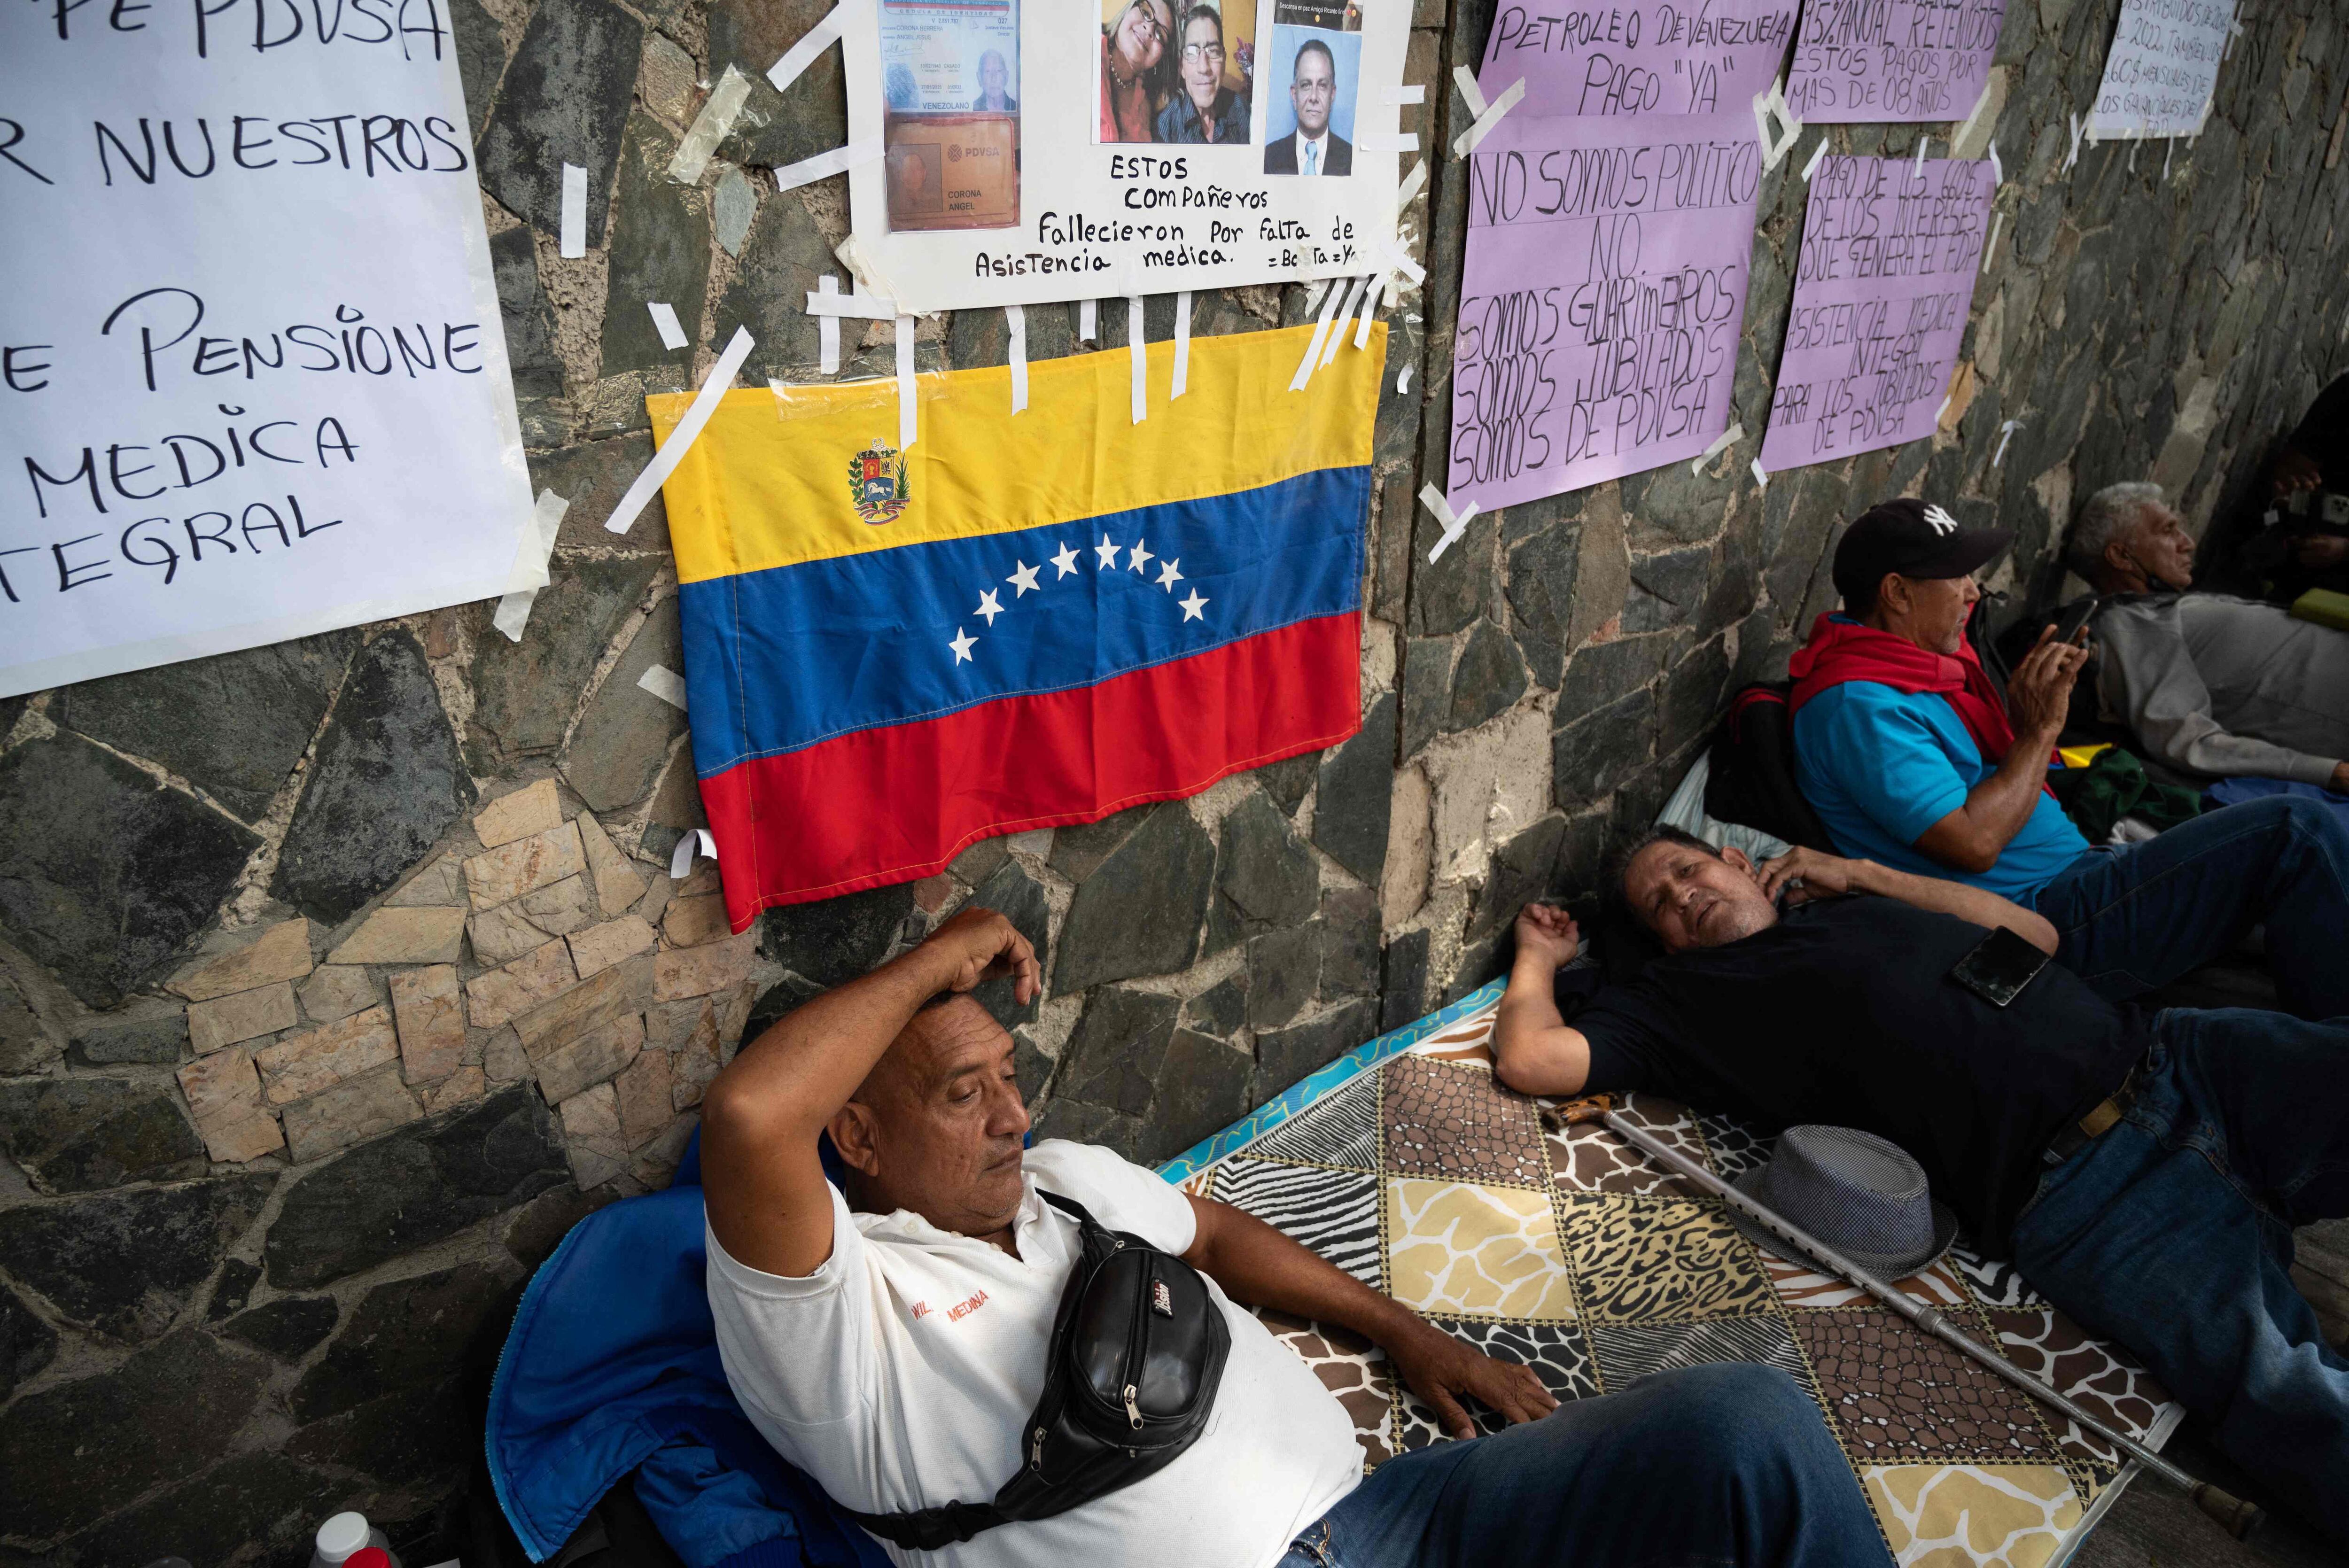 Trabajadores jubilados del sector petrolero realizan huelga de hambre en la calle frente a las instalaciones de la empresa PDVSA, exigiendo el pago de pensiones y ganancias no distribuidas desde 2016, en Caracas, el 13 de setiembre. Fotografía: